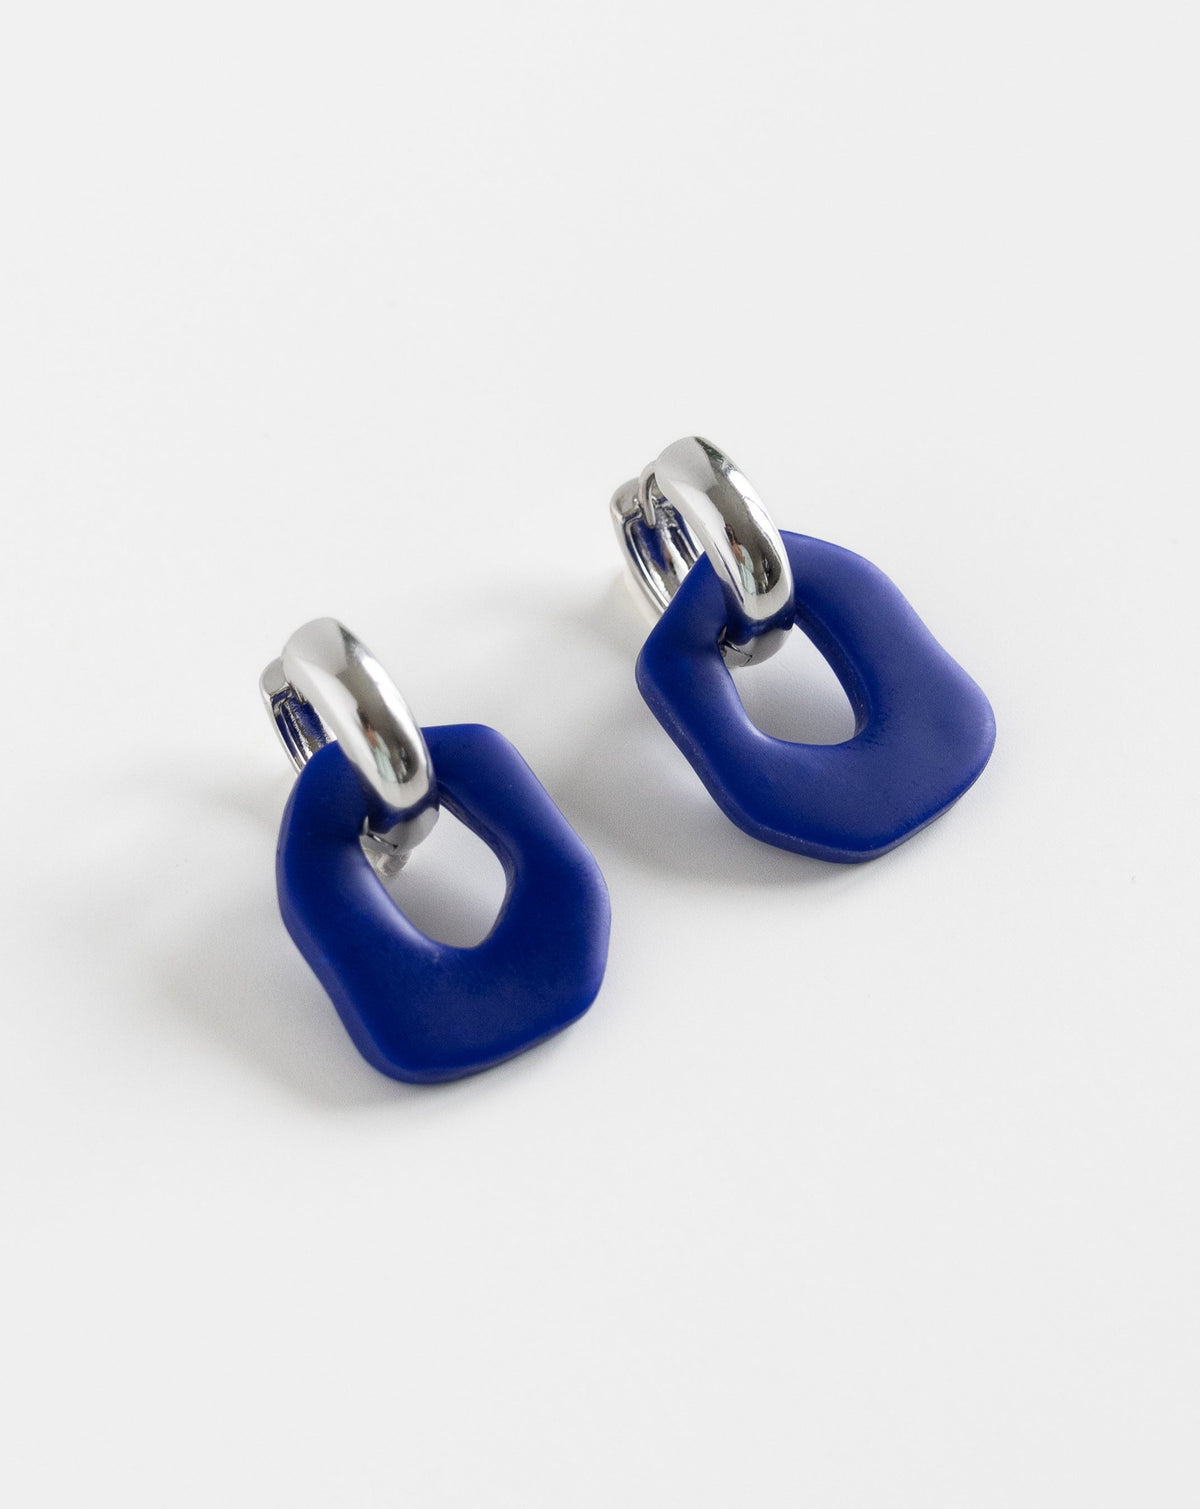 Darien earrings in Hue Blue color with silver hoops, side view